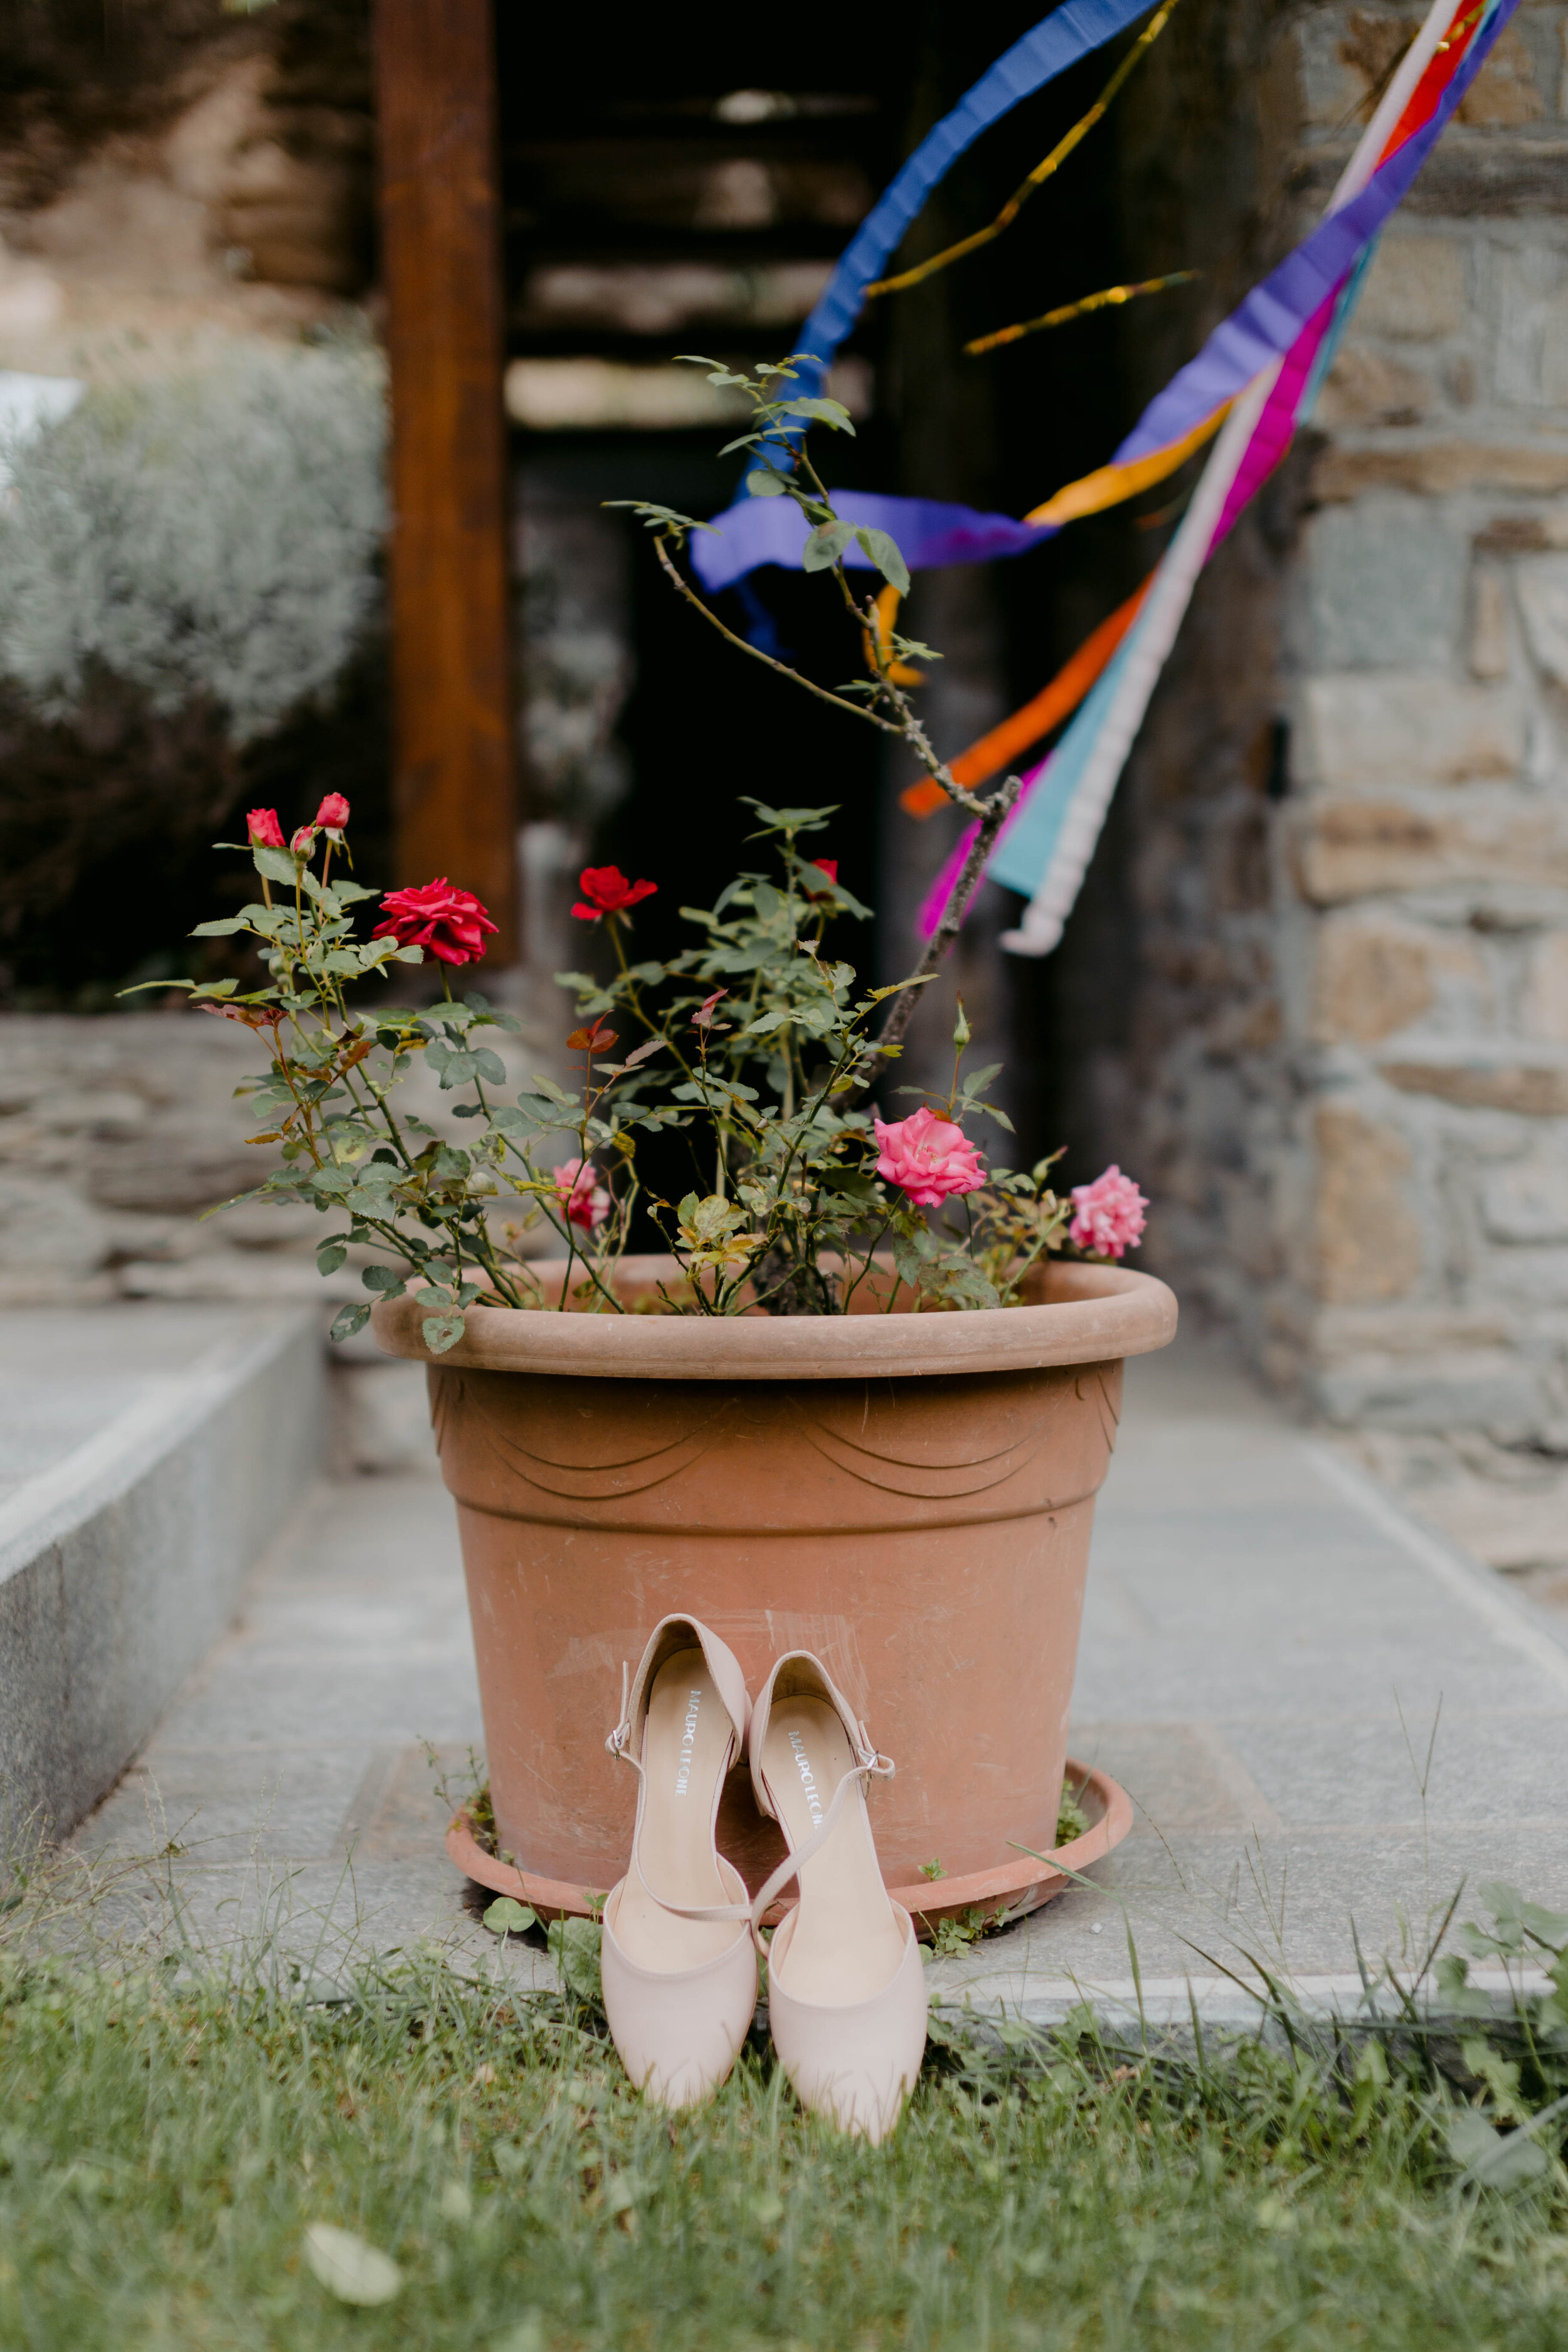 005 - Matrimonio in Val di Susa - Miriam Callegari Fotografa.JPG